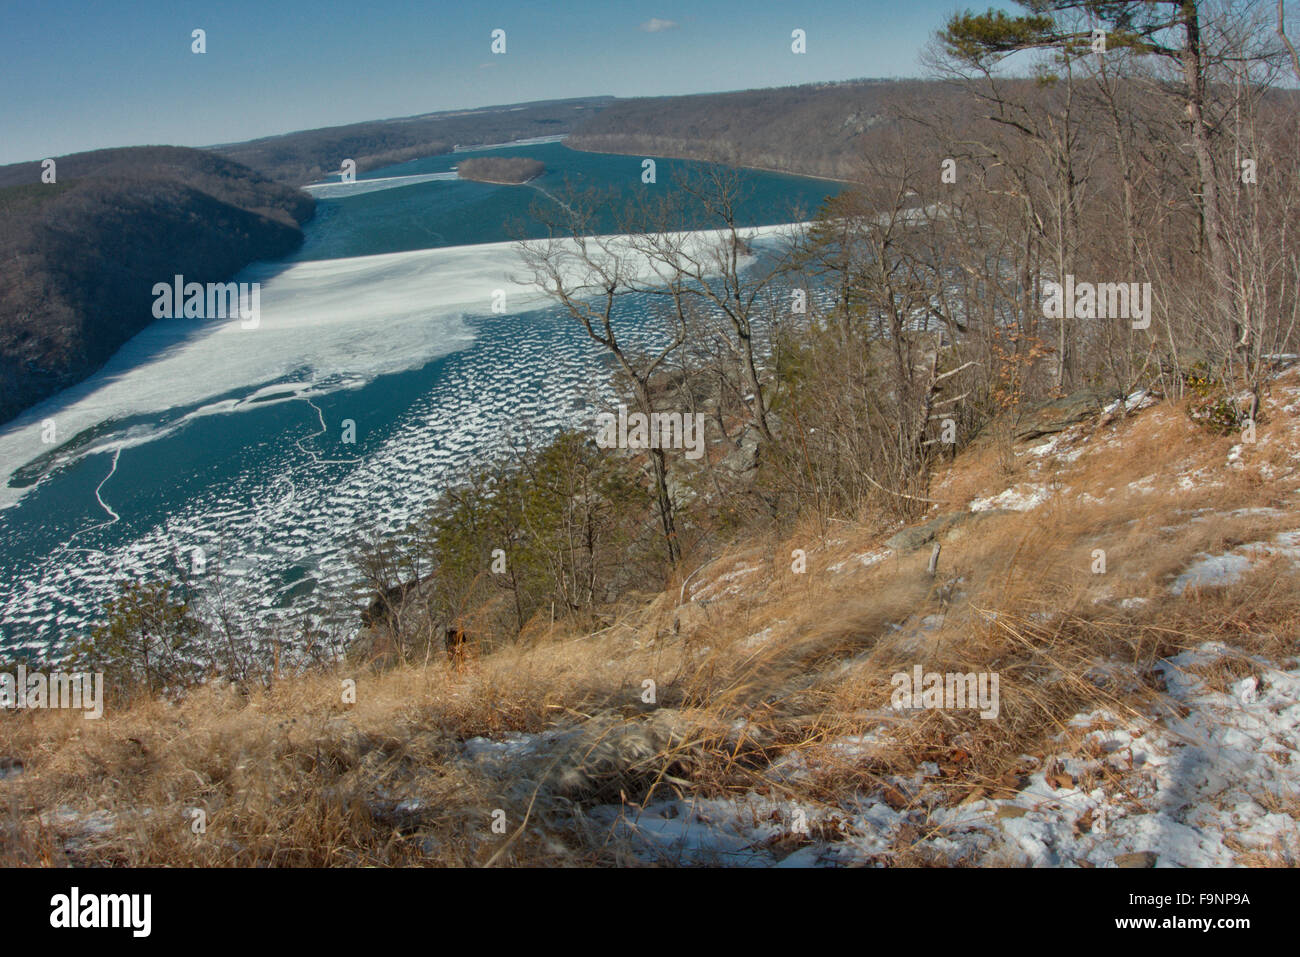 El río Susquehanna cerca de donde se encuentra con la Bahía de Chesapeake en Pennsylvania, sólido congelado durante enero de clima frígido. Foto de stock